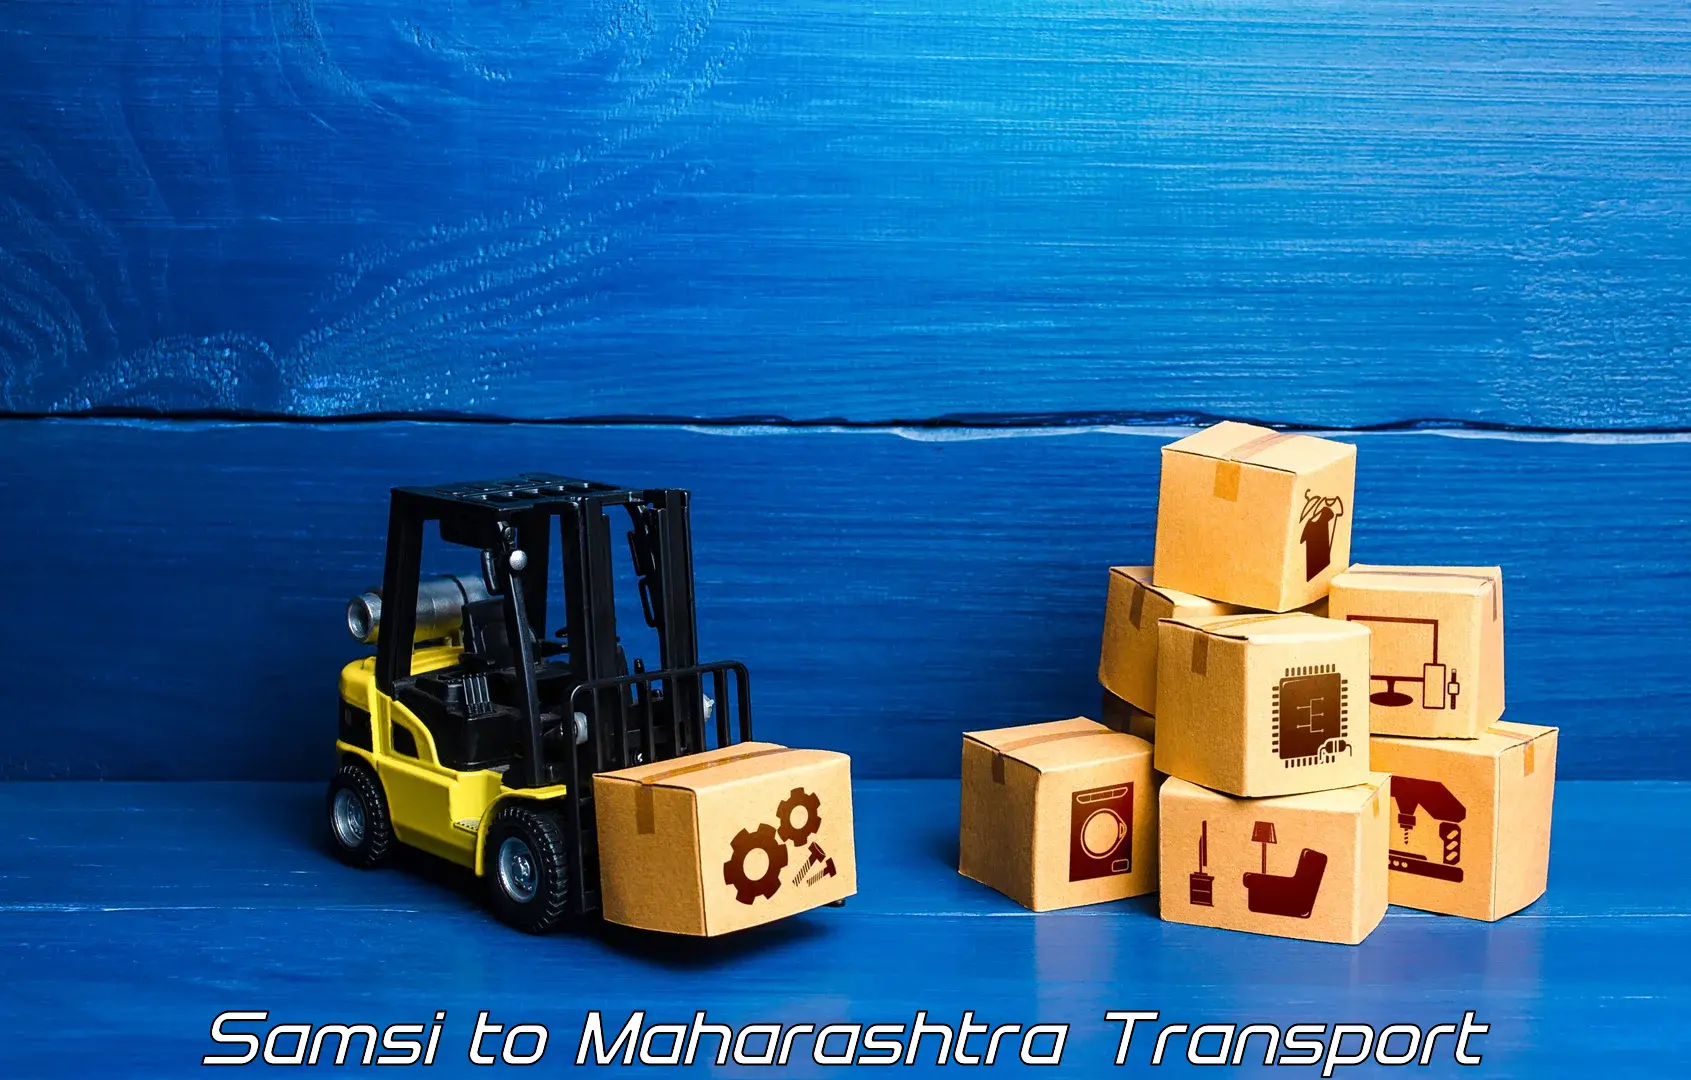 Cargo train transport services Samsi to Maharashtra